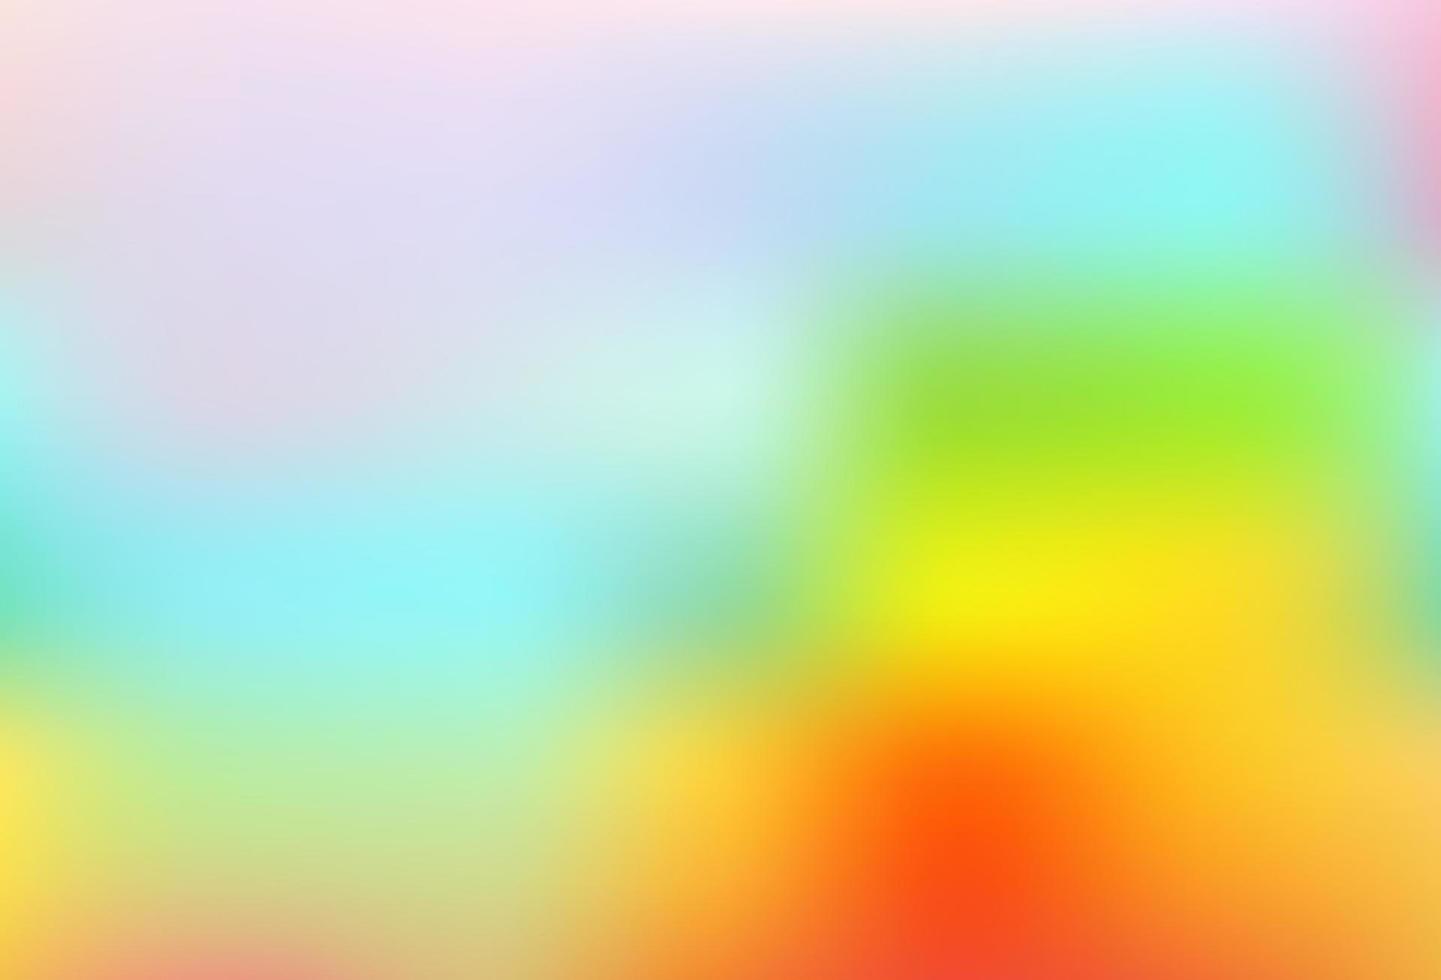 licht veelkleurig, regenboog vector wazig glans abstract patroon.